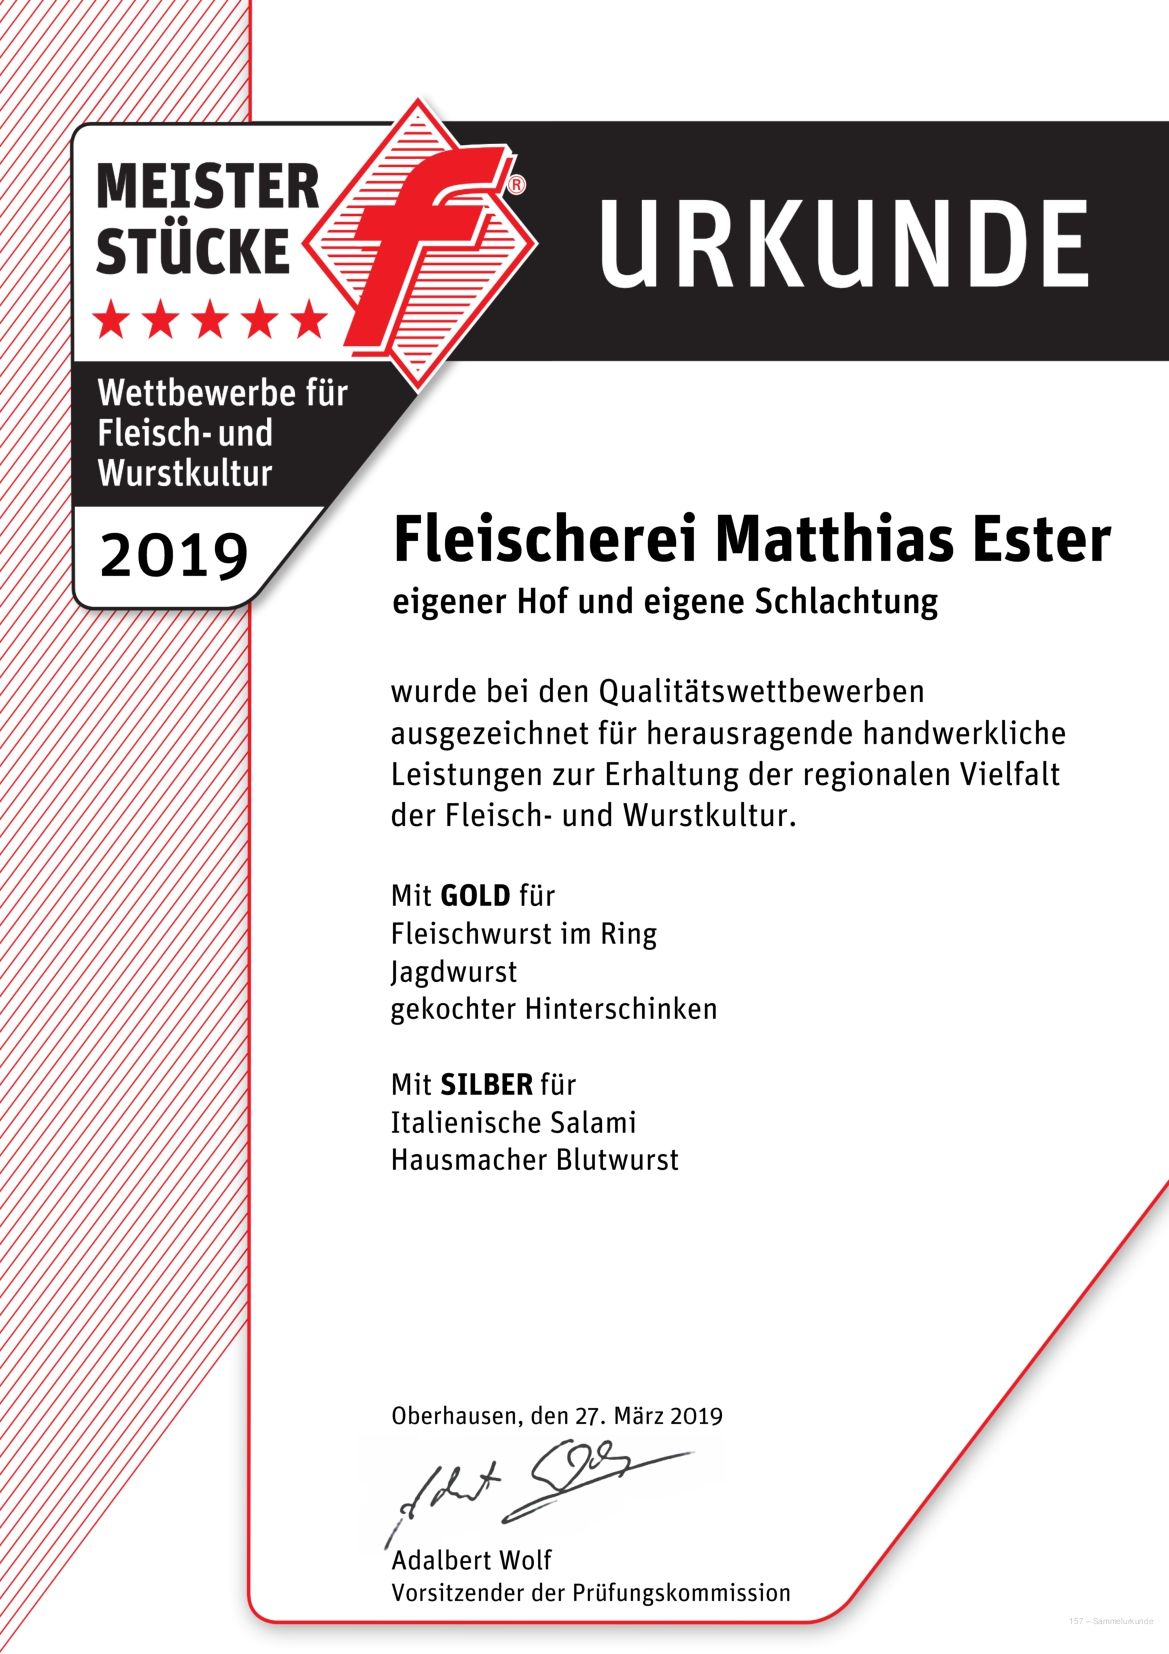 Auszeichnungen Urkunde Meisterstücke 2019 Fleischerei Ester